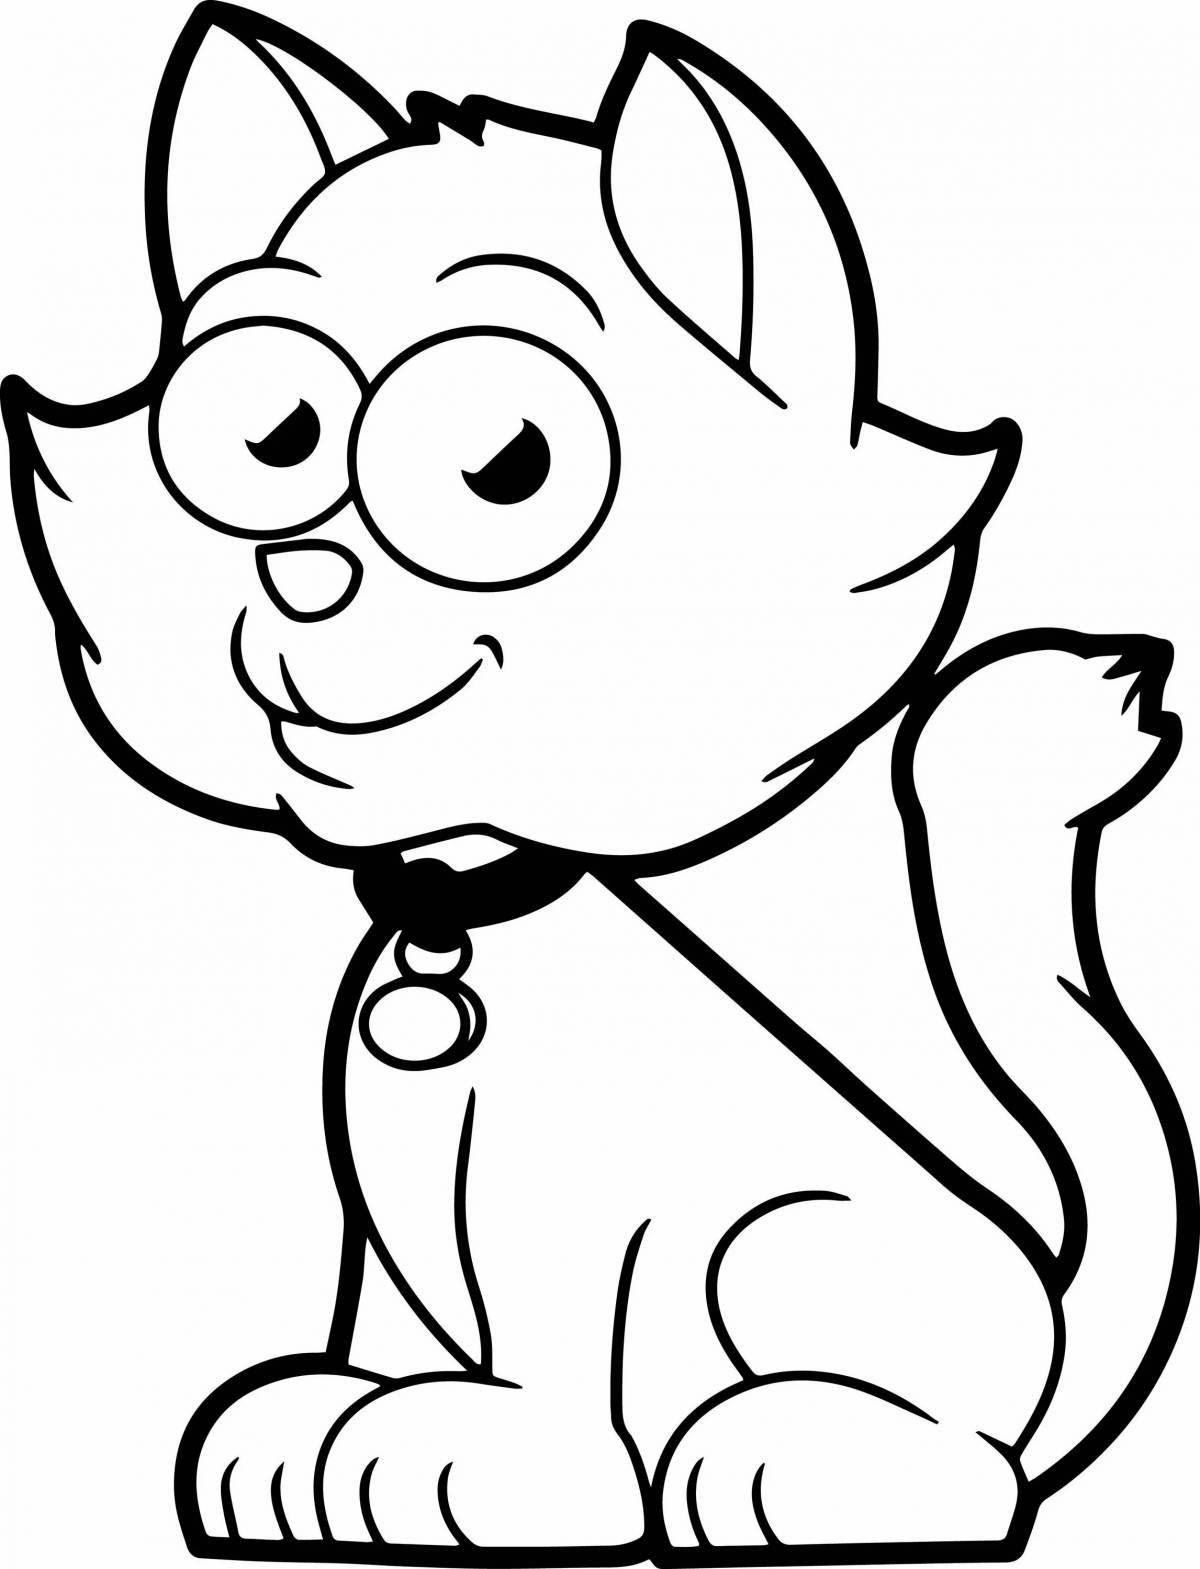 Сказочная мультяшная кошка-раскраска для детей